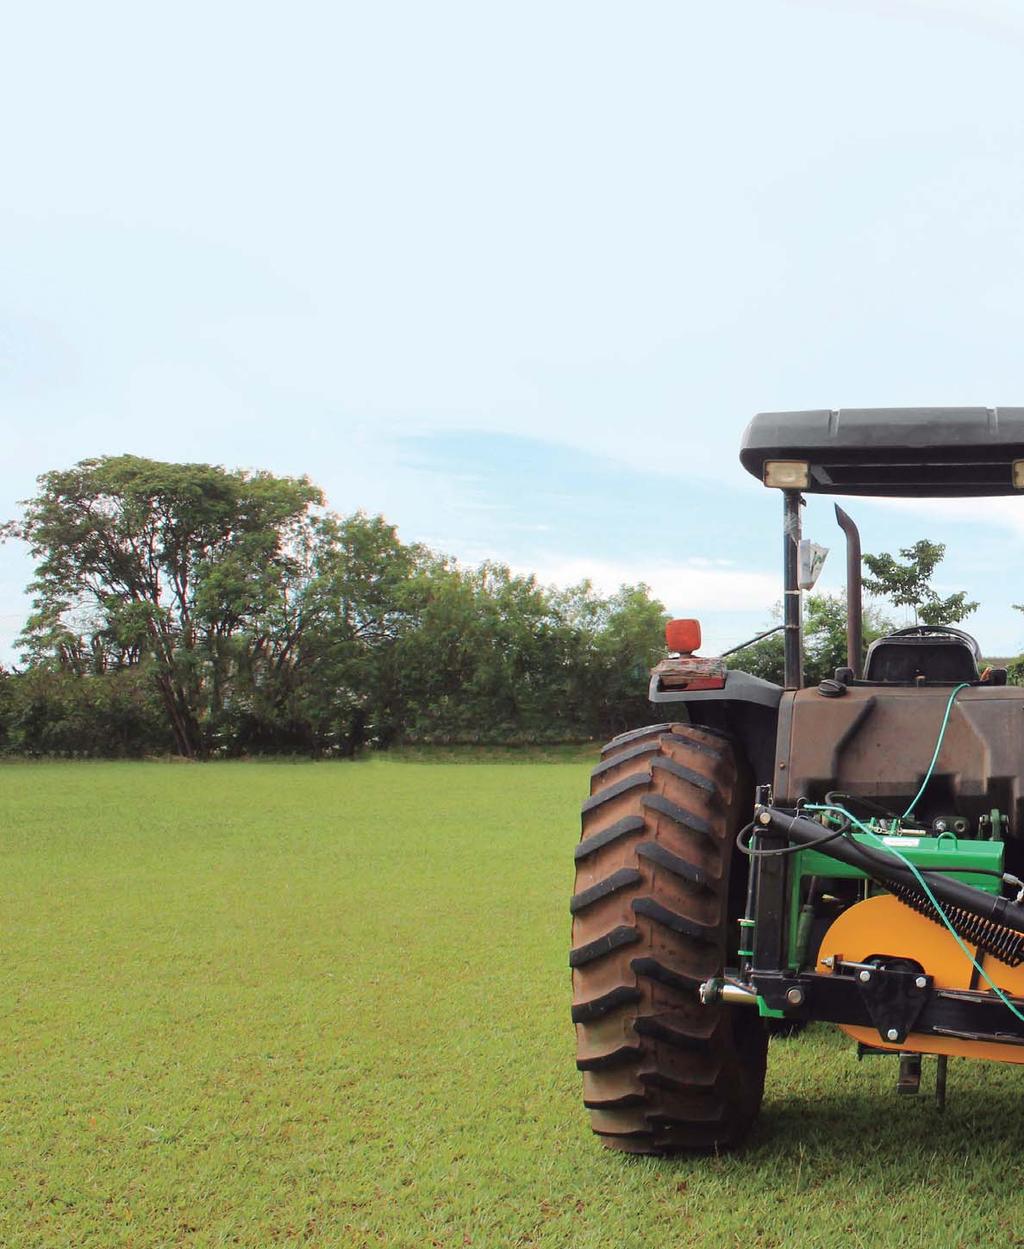 La Máquinas Agrícolas es una empresa con capital 100% brasileño, fundada en 1981 con el objetivo de producir maquinaria para